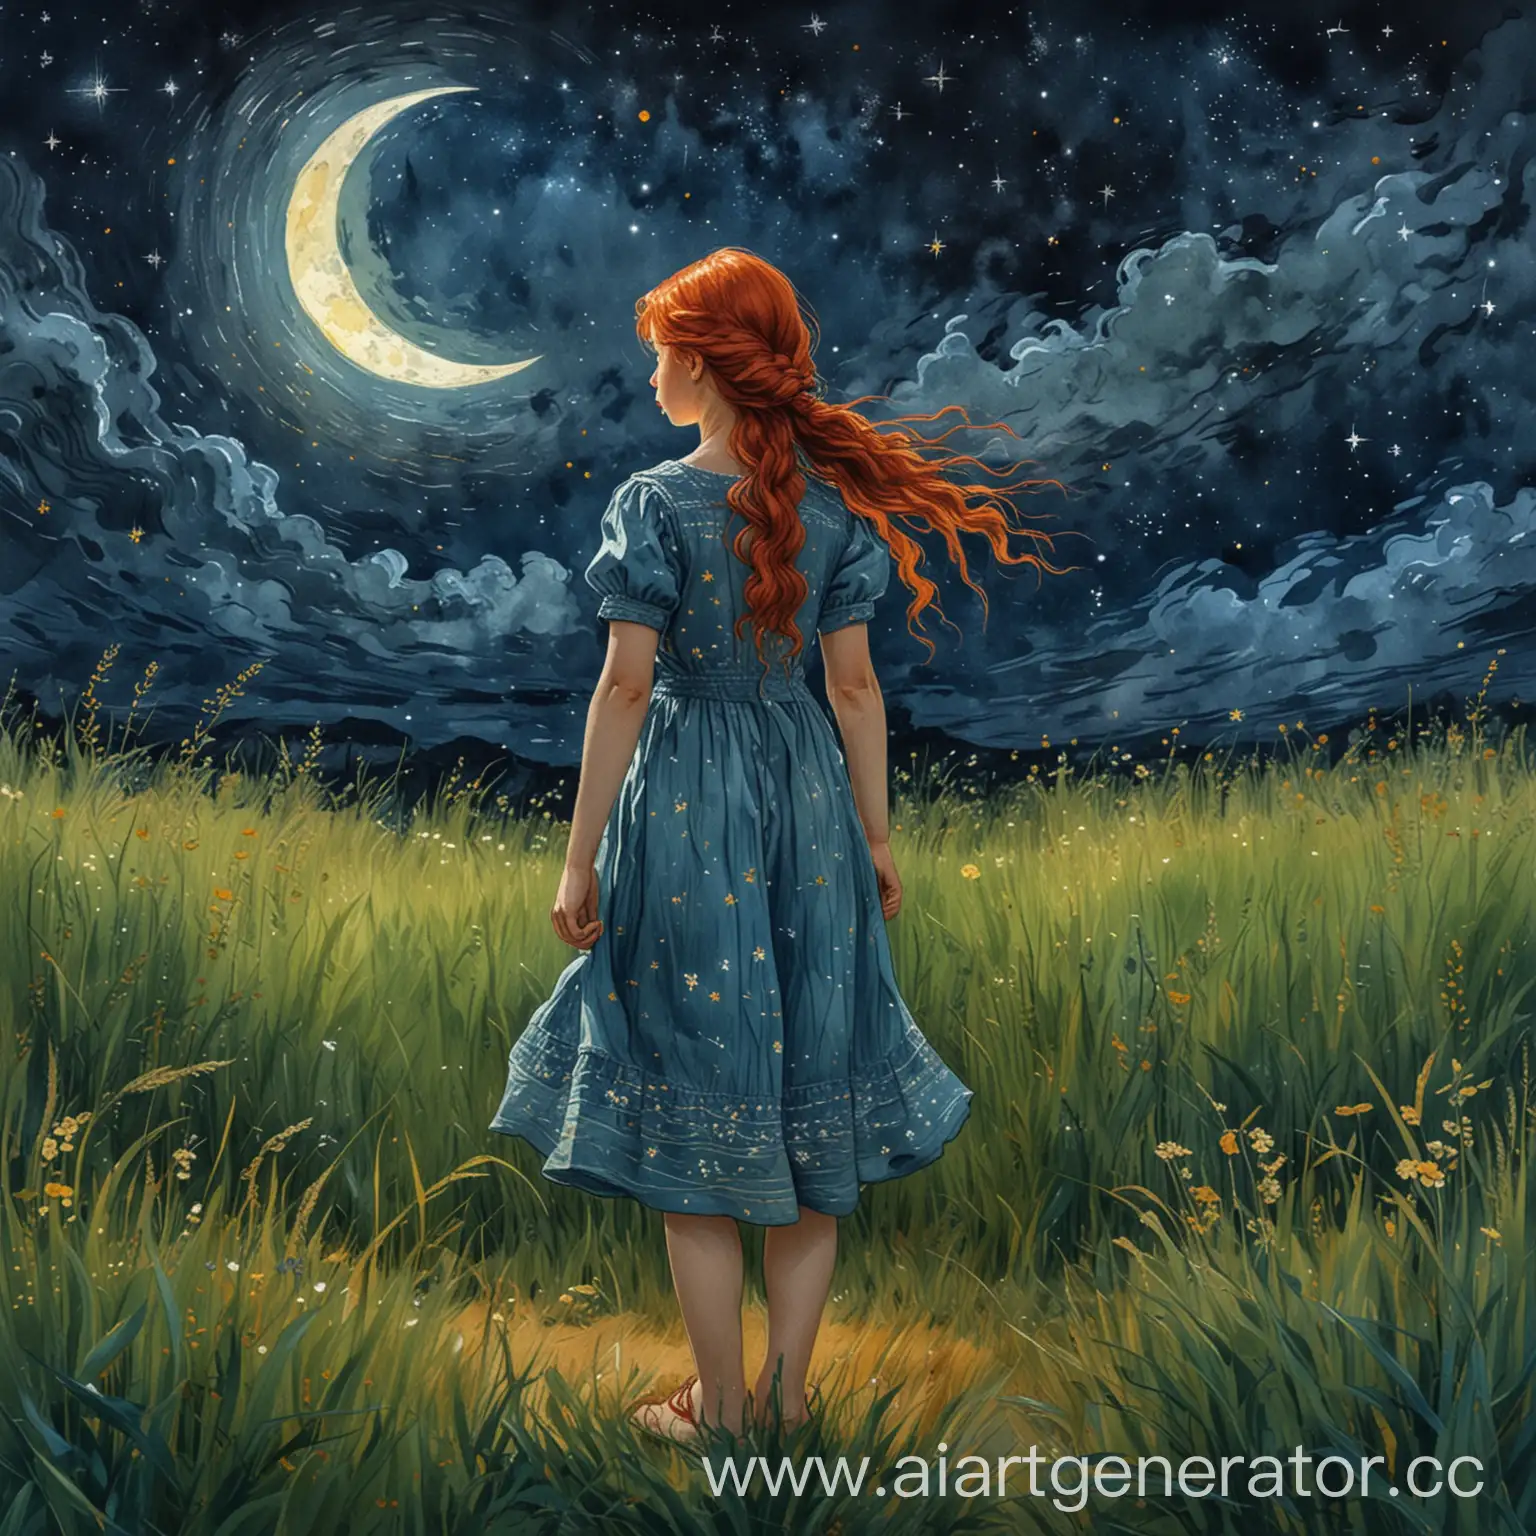 рисунок акварельными красками в в стиле художника Ван Гога. вдалеке у горизонта стоит девочка в полный рост 12 лет в летнем платье и с длинной русой косой. девочка смотрит на ночное небо. внизу густая трава,  в небе светит серп луны  и много звезд. 